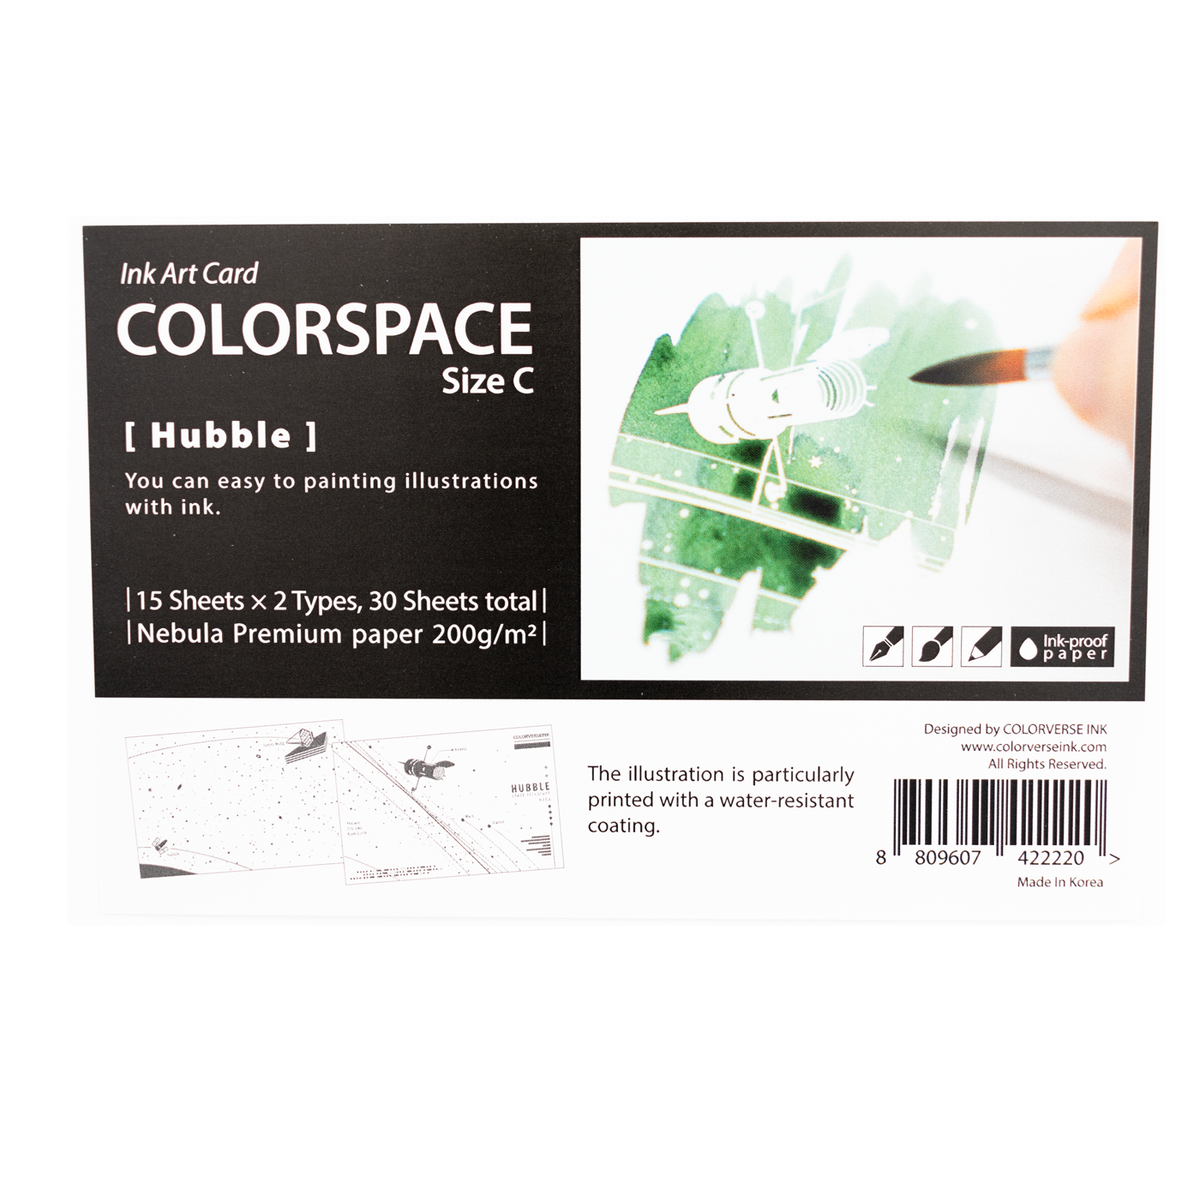 Colorverse Colorspace Hubble-C Swatch Art Card